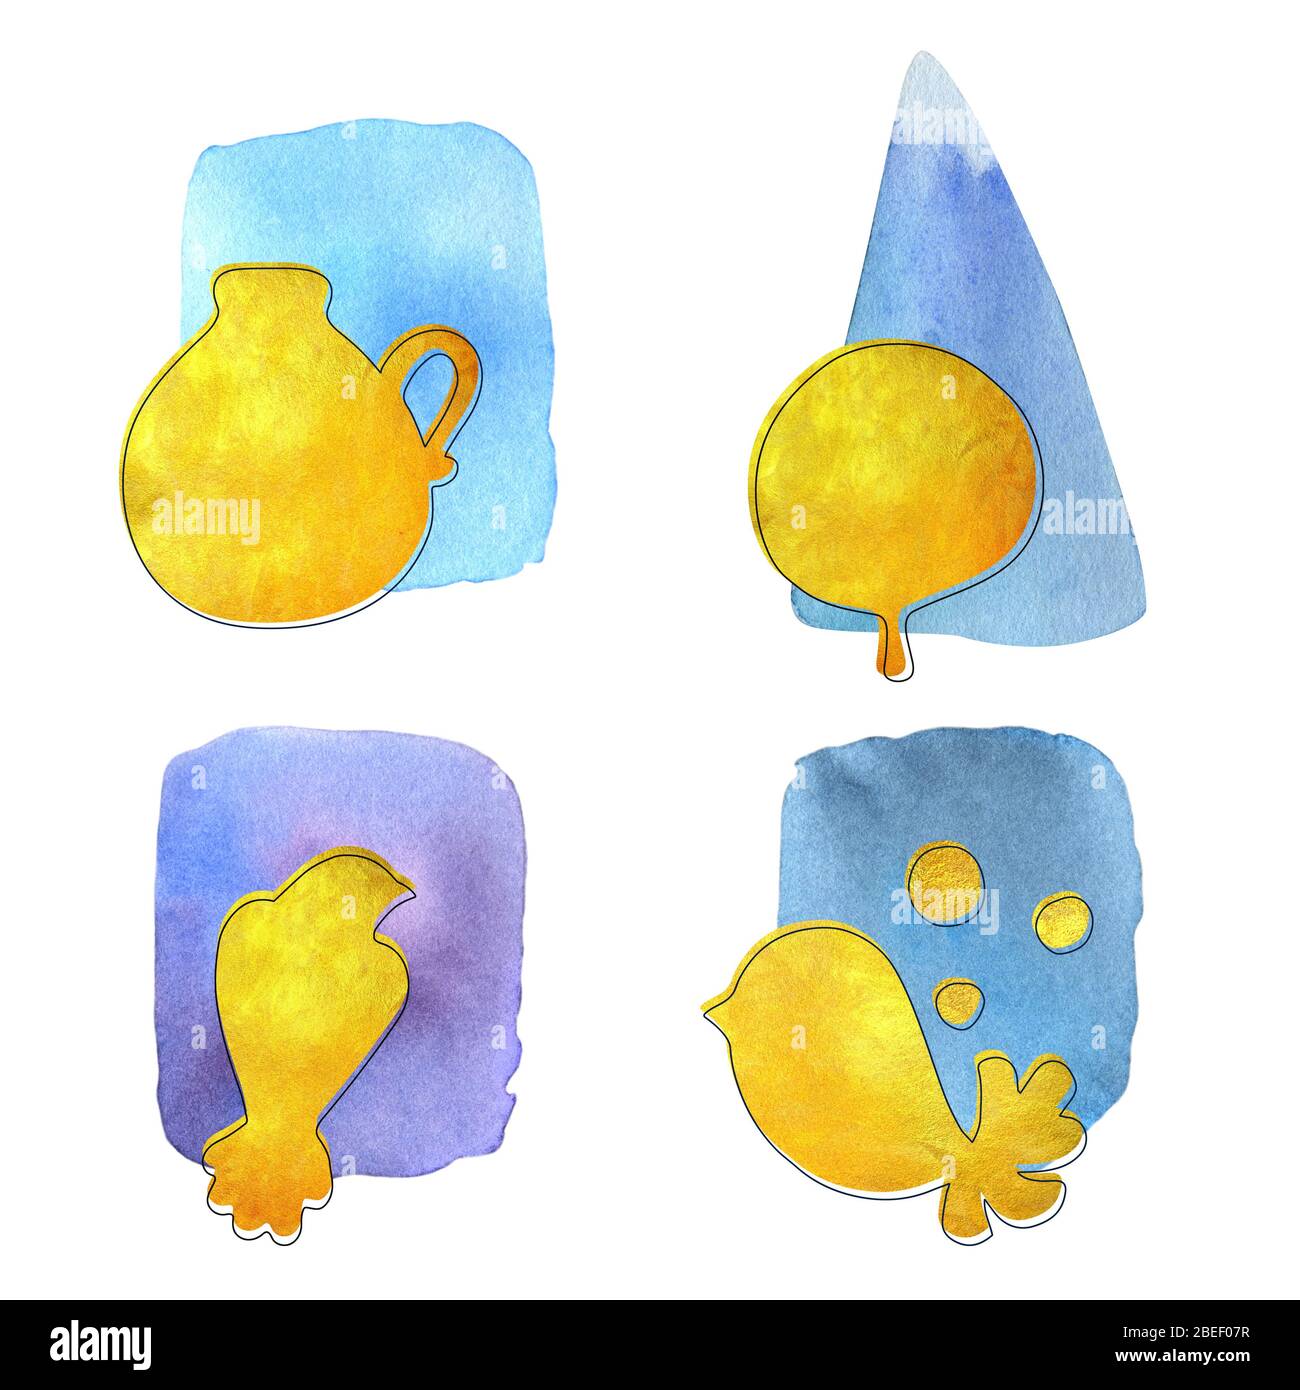 Hand bemaltes Aquarell abstrakt Set mit separaten Elementen auf dem hellen Hintergrund. Helles Cartoon-Konzept für Einladungen, Poster, Grußkarten. Stockfoto